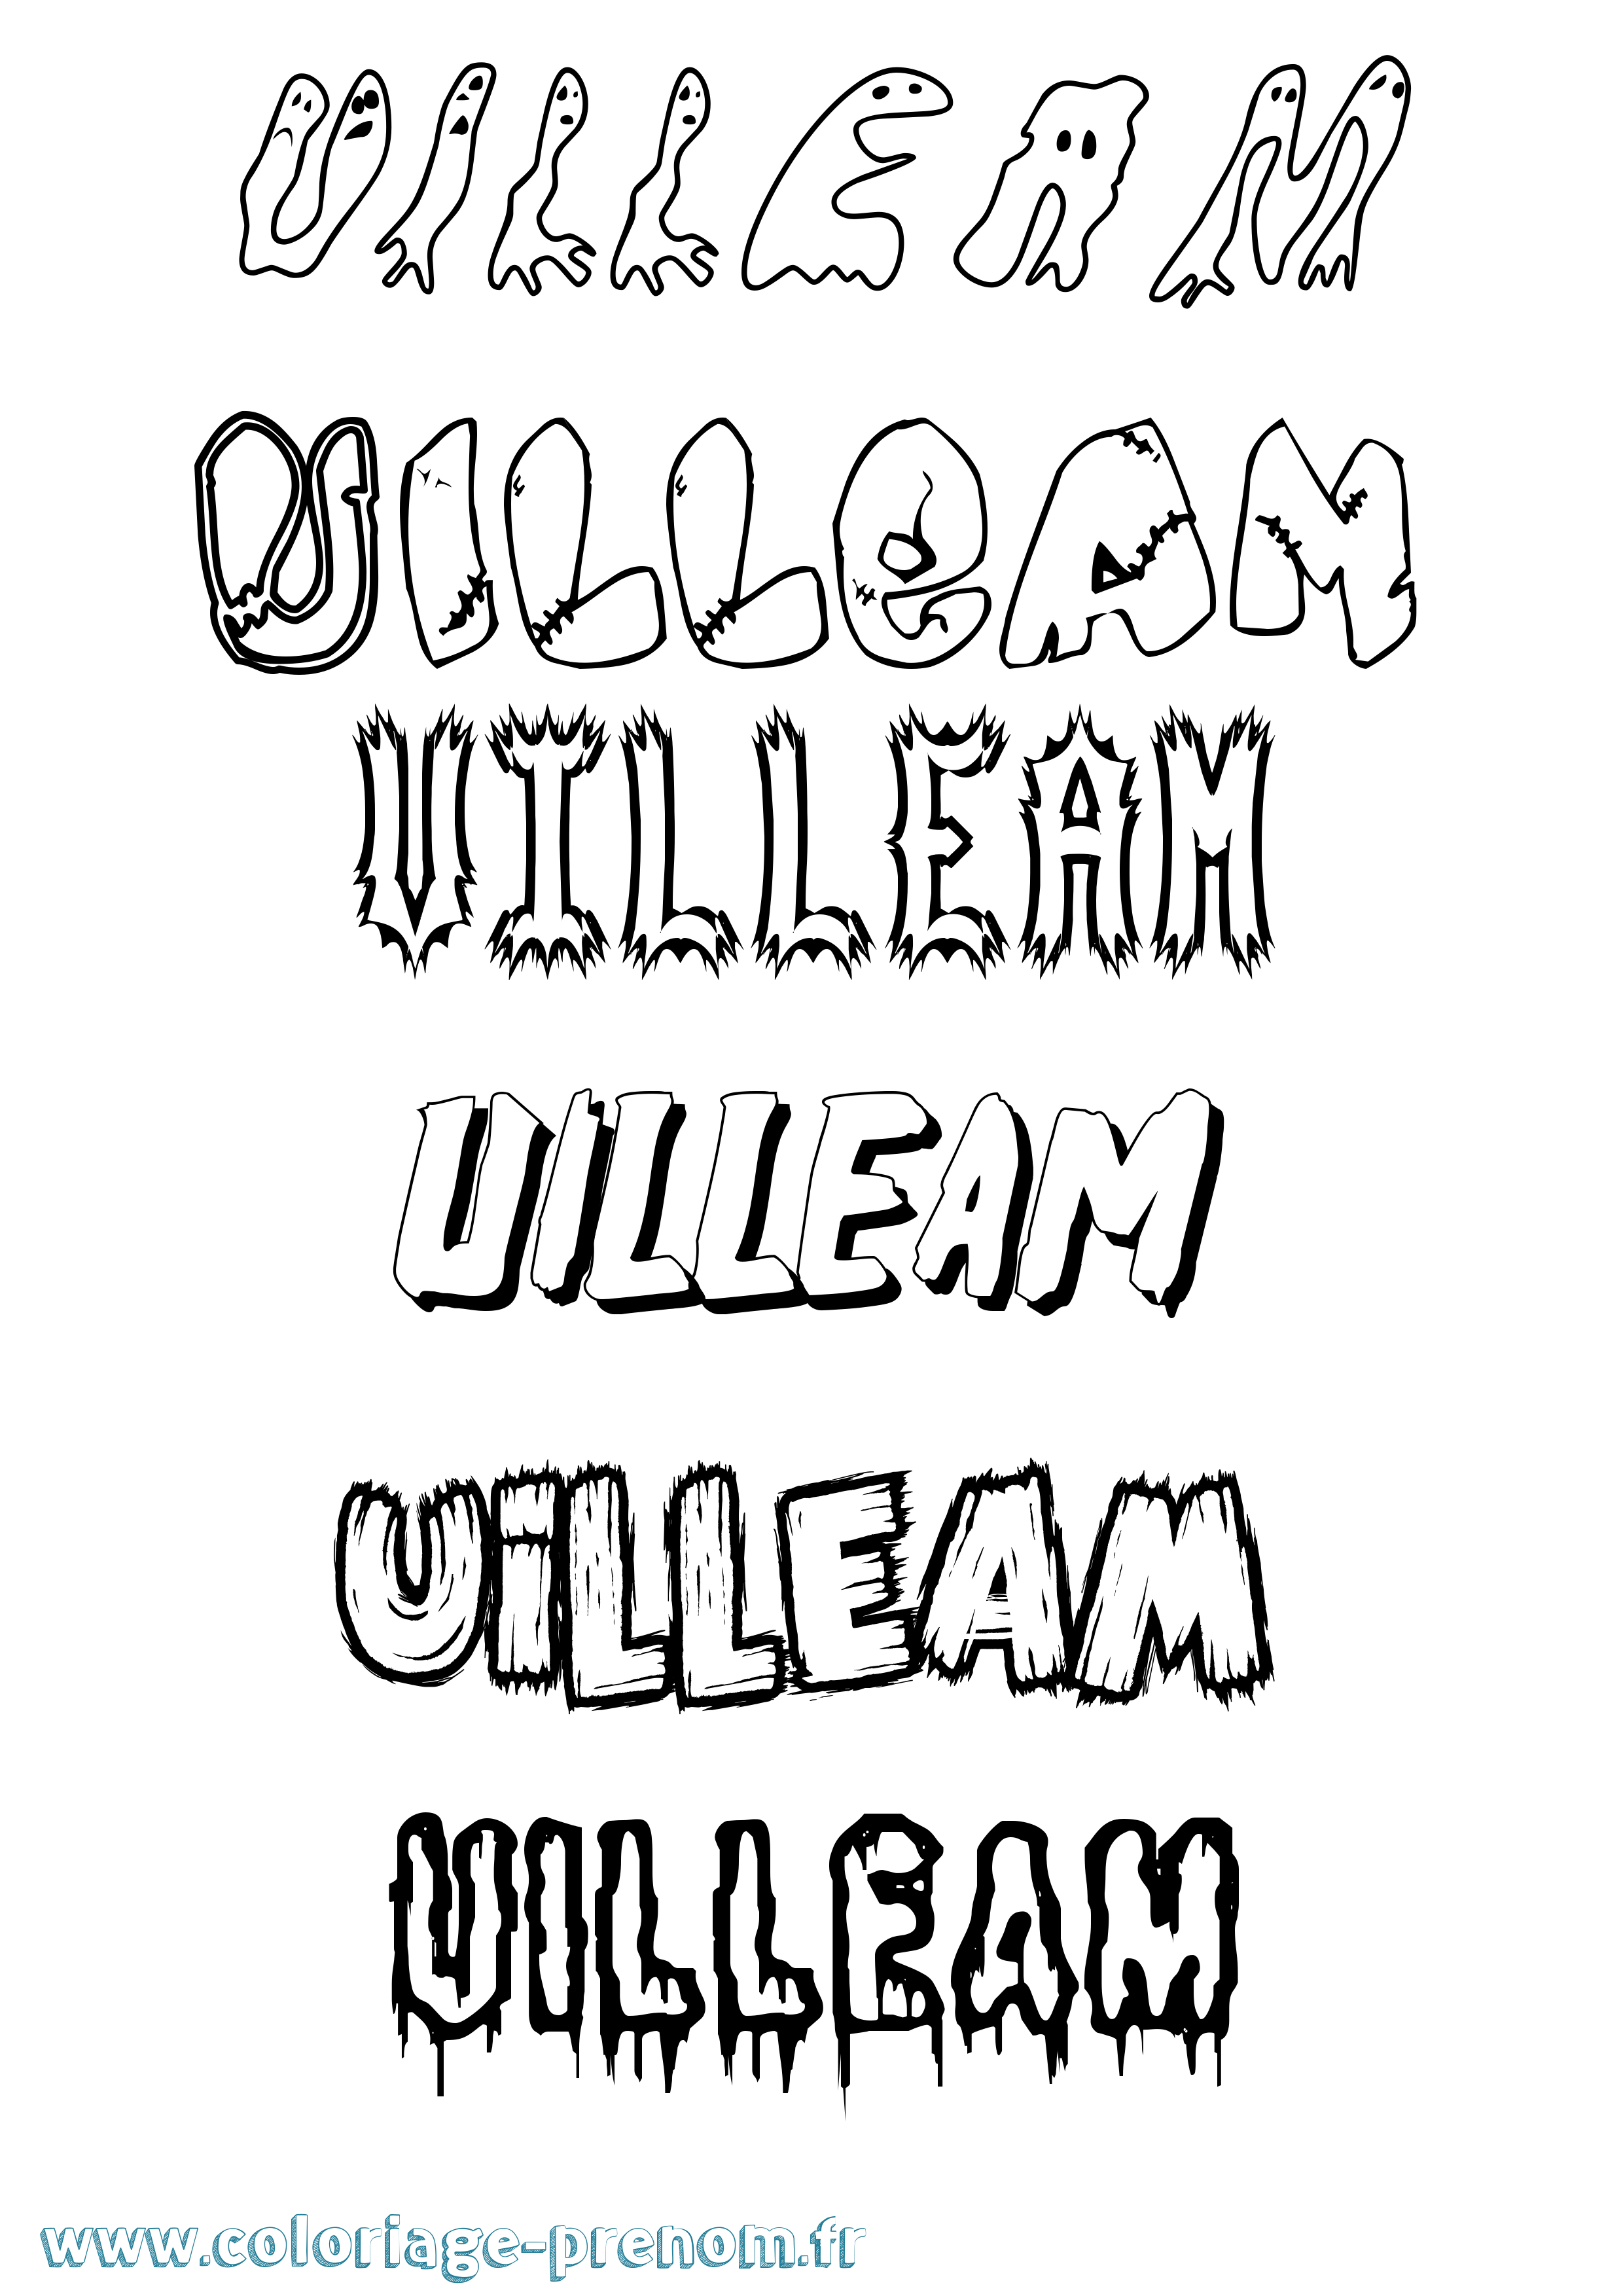 Coloriage prénom Uilleam Frisson